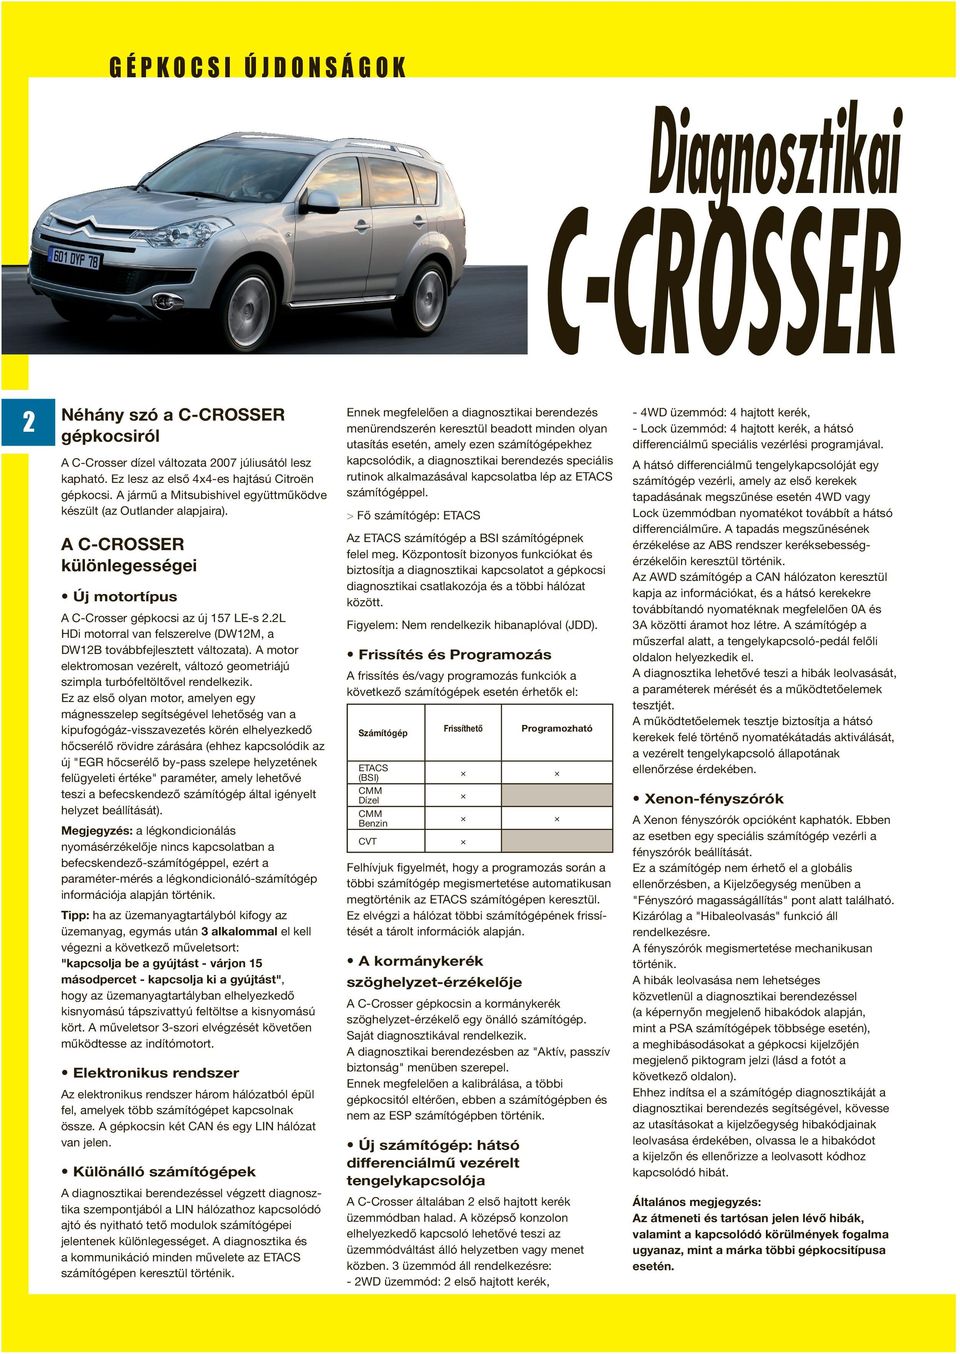 A C-CROSSER különlegességei Új motortípus A C-Crosser gépkocsi az új 157 LE-s 2.2L HDi motorral van felszerelve (DW12M, a DW12B továbbfejlesztett változata).